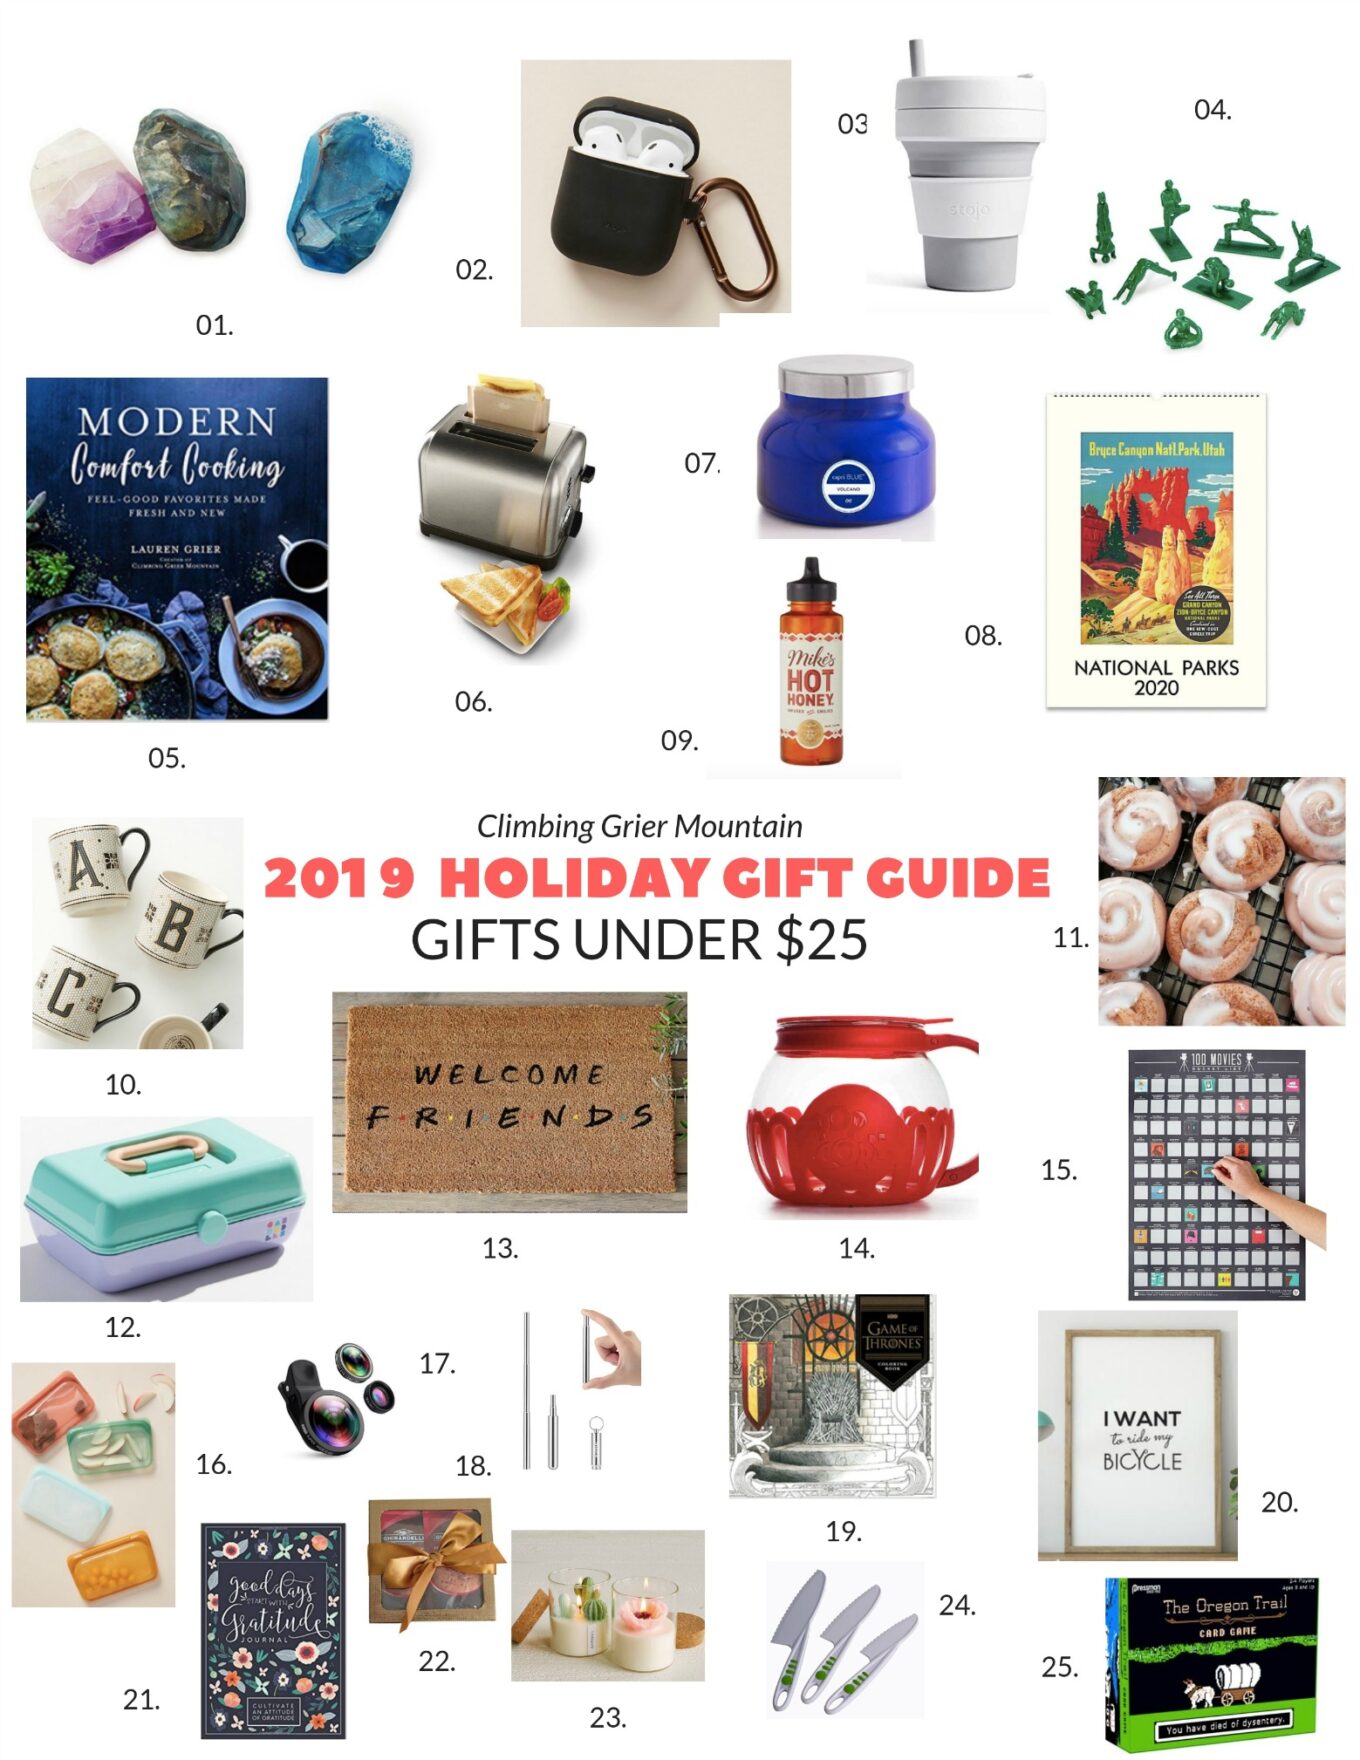 Gifts under $25 - By Lauren M